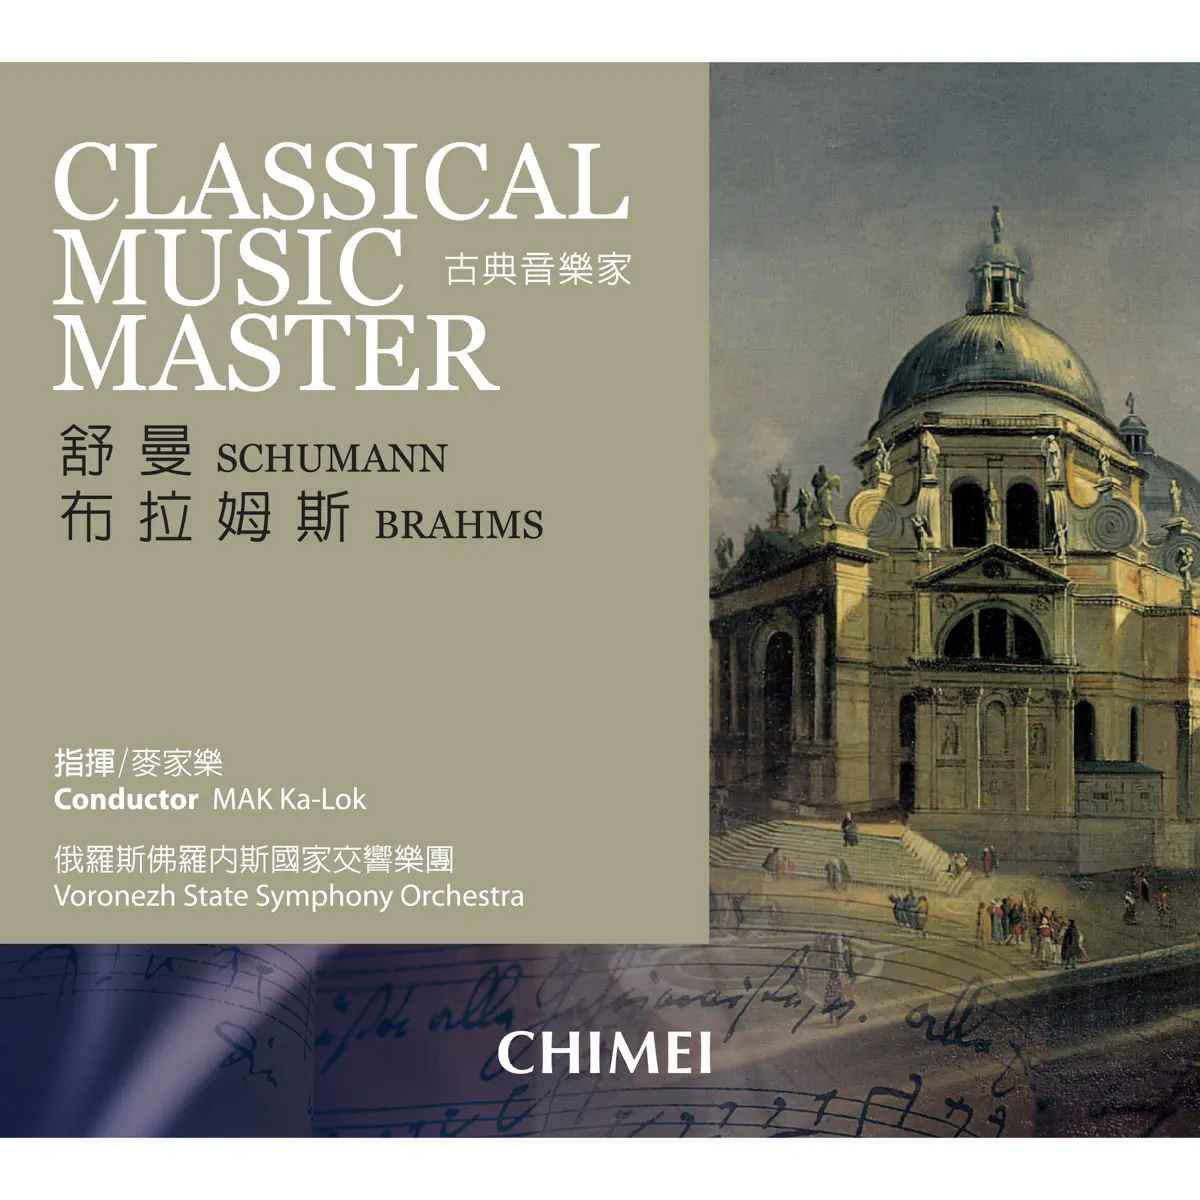 麦家乐 & 俄罗斯佛罗内斯国家交响乐团 - 古典音乐家: 舒曼 & 布拉姆斯 Classical Music Master: Schumann & Brahms (2007) [iTunes Plus AAC M4A]-新房子